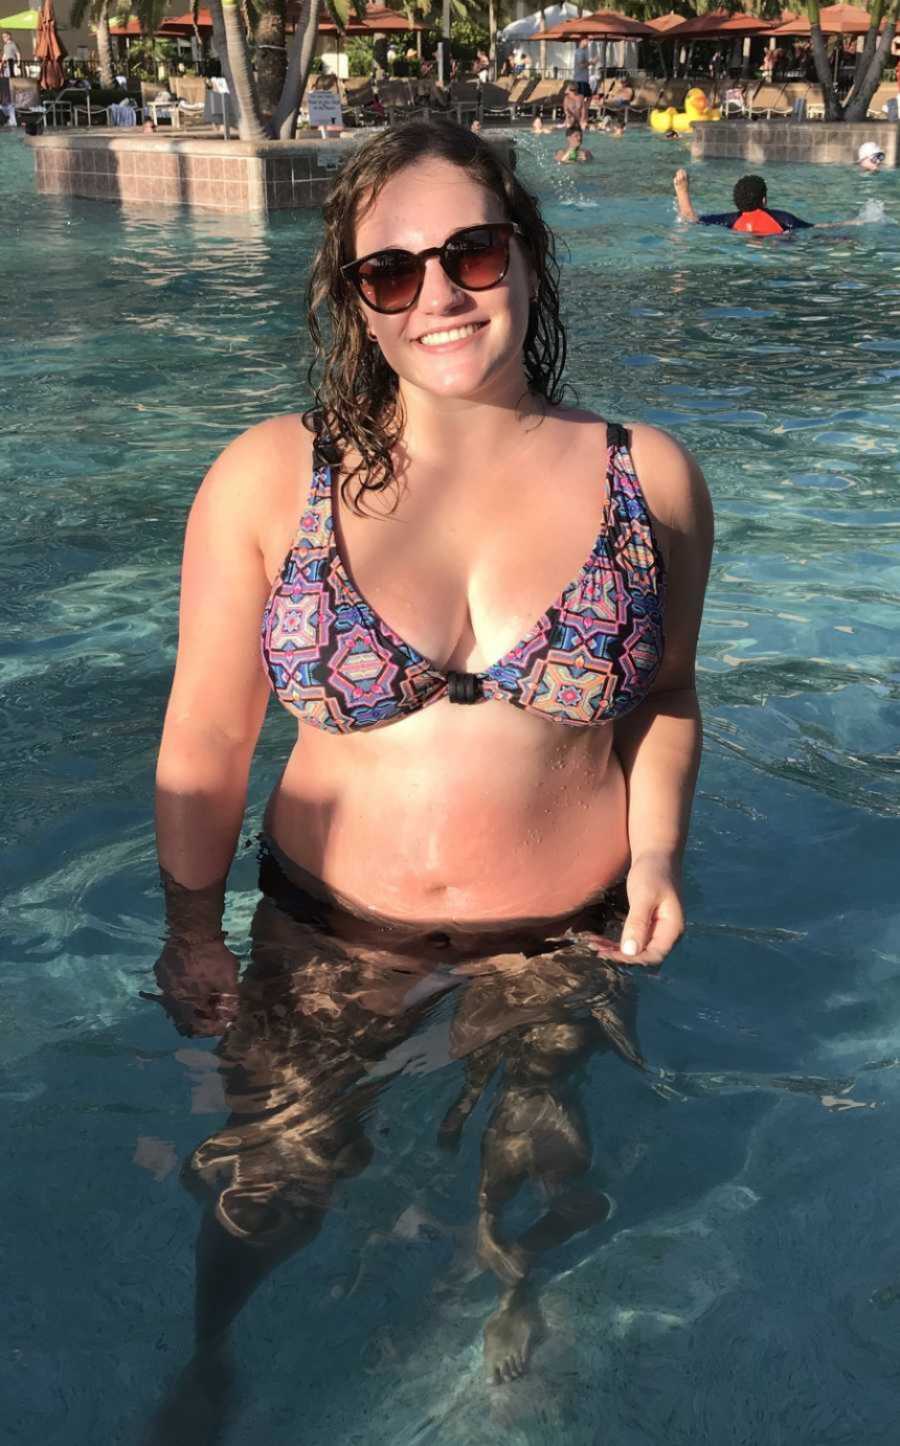 woman in a pool taking a selfie